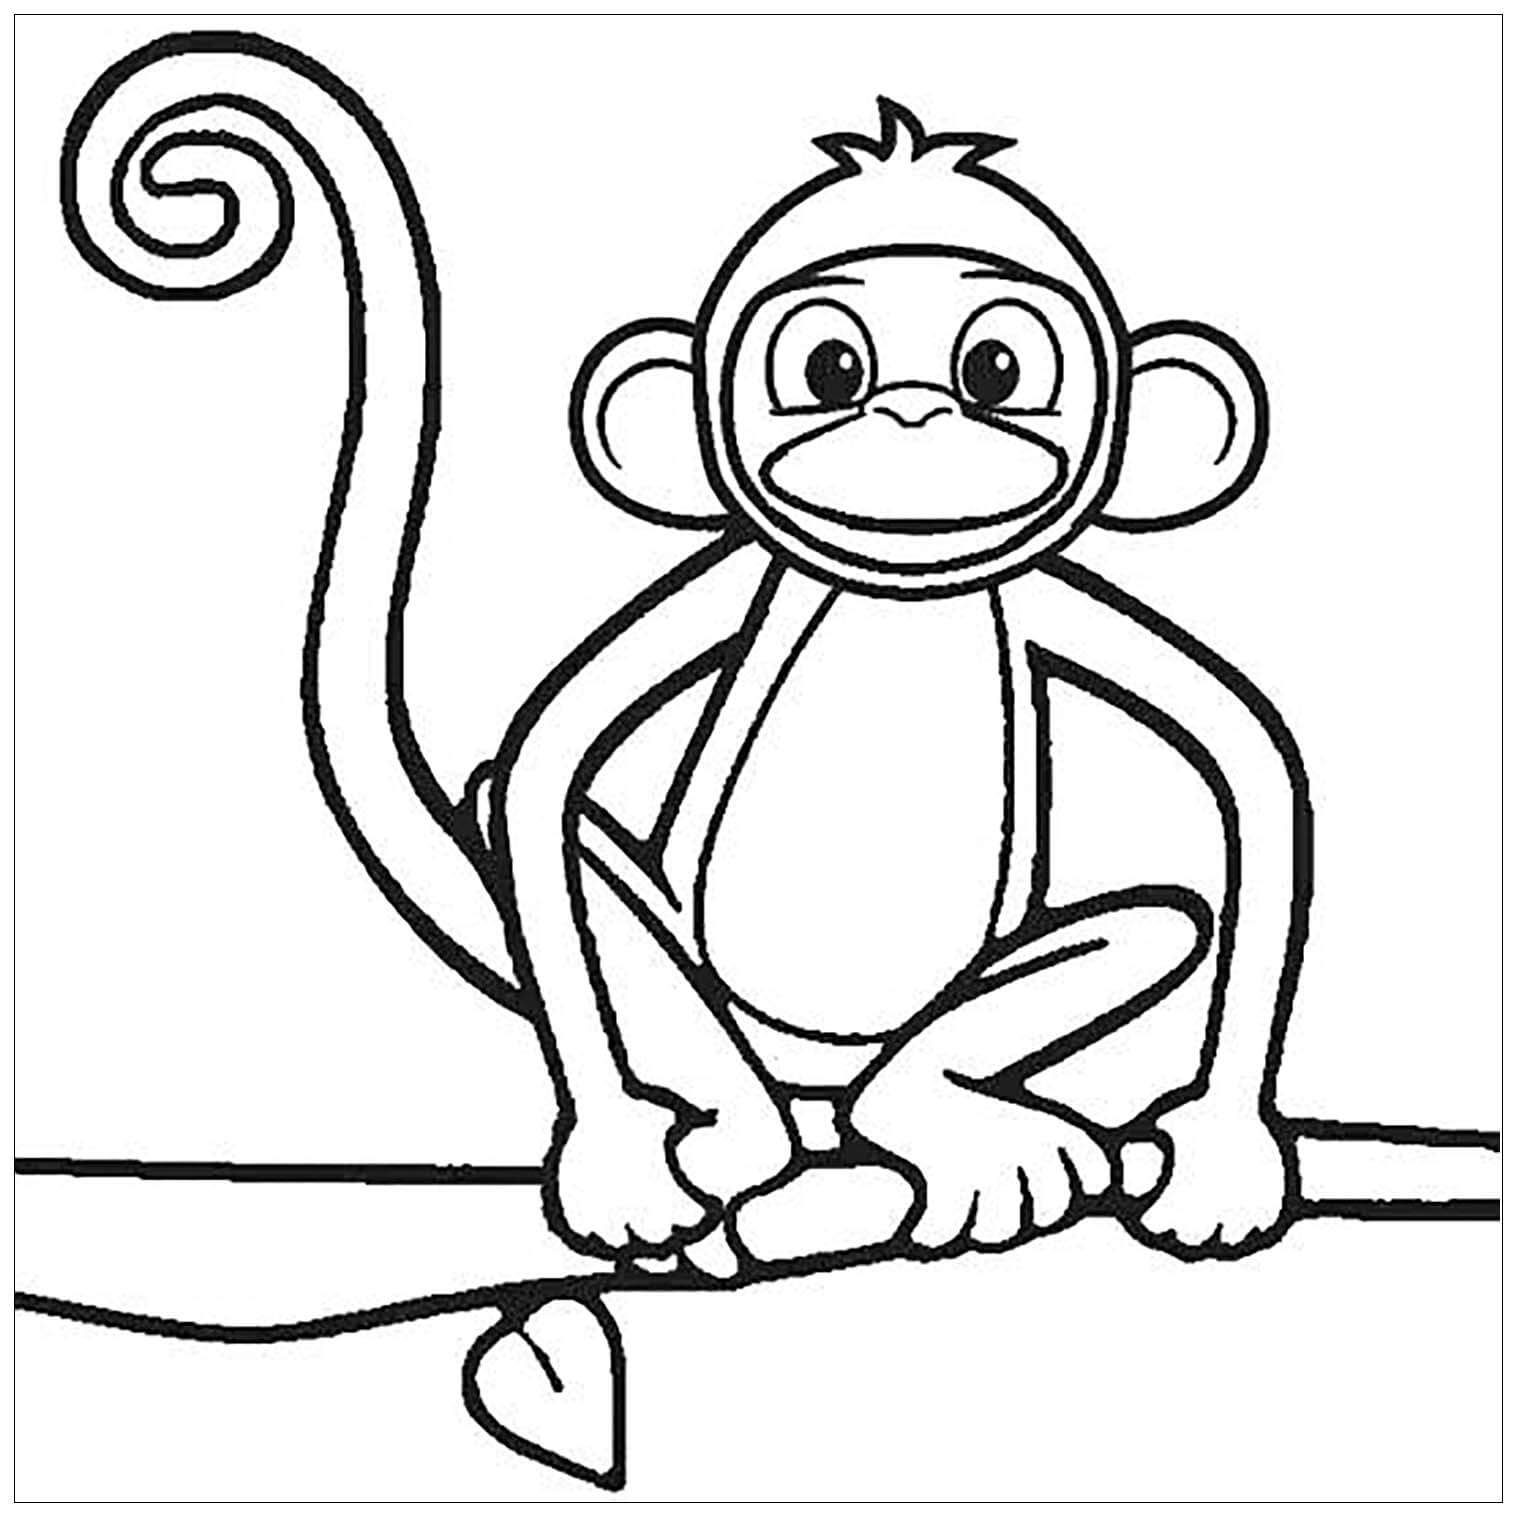 Desenhe o Macaco Sentado no Galho da Árvore para colorir